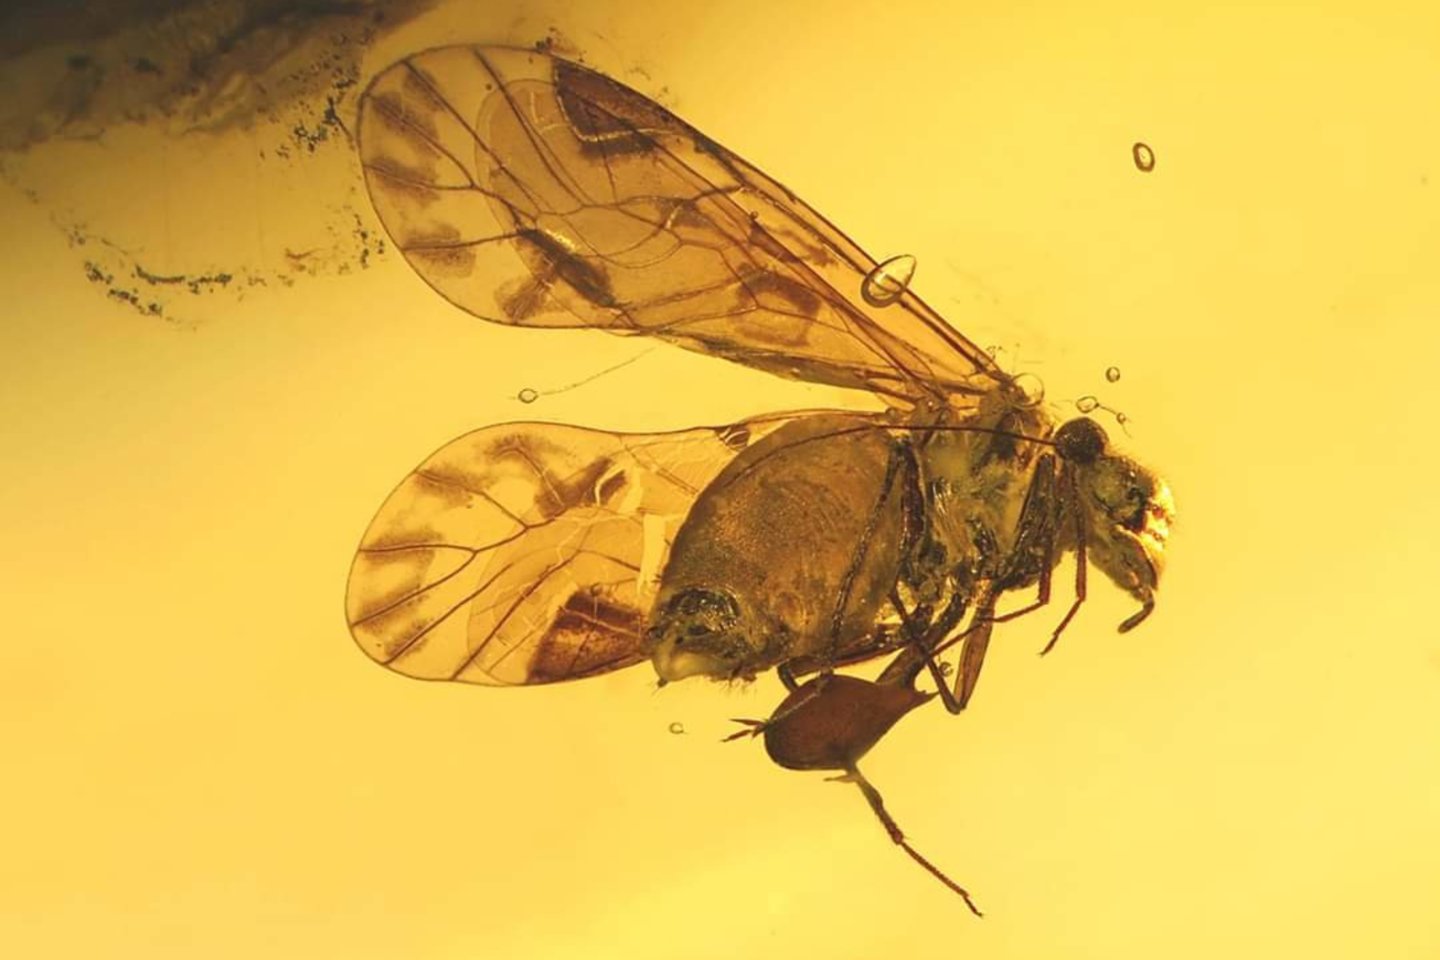 Gintaro sakuose sustingo prie milijonus metų gyvenę vabzdžiai.<br> Mizgirių muziejaus nuotr.